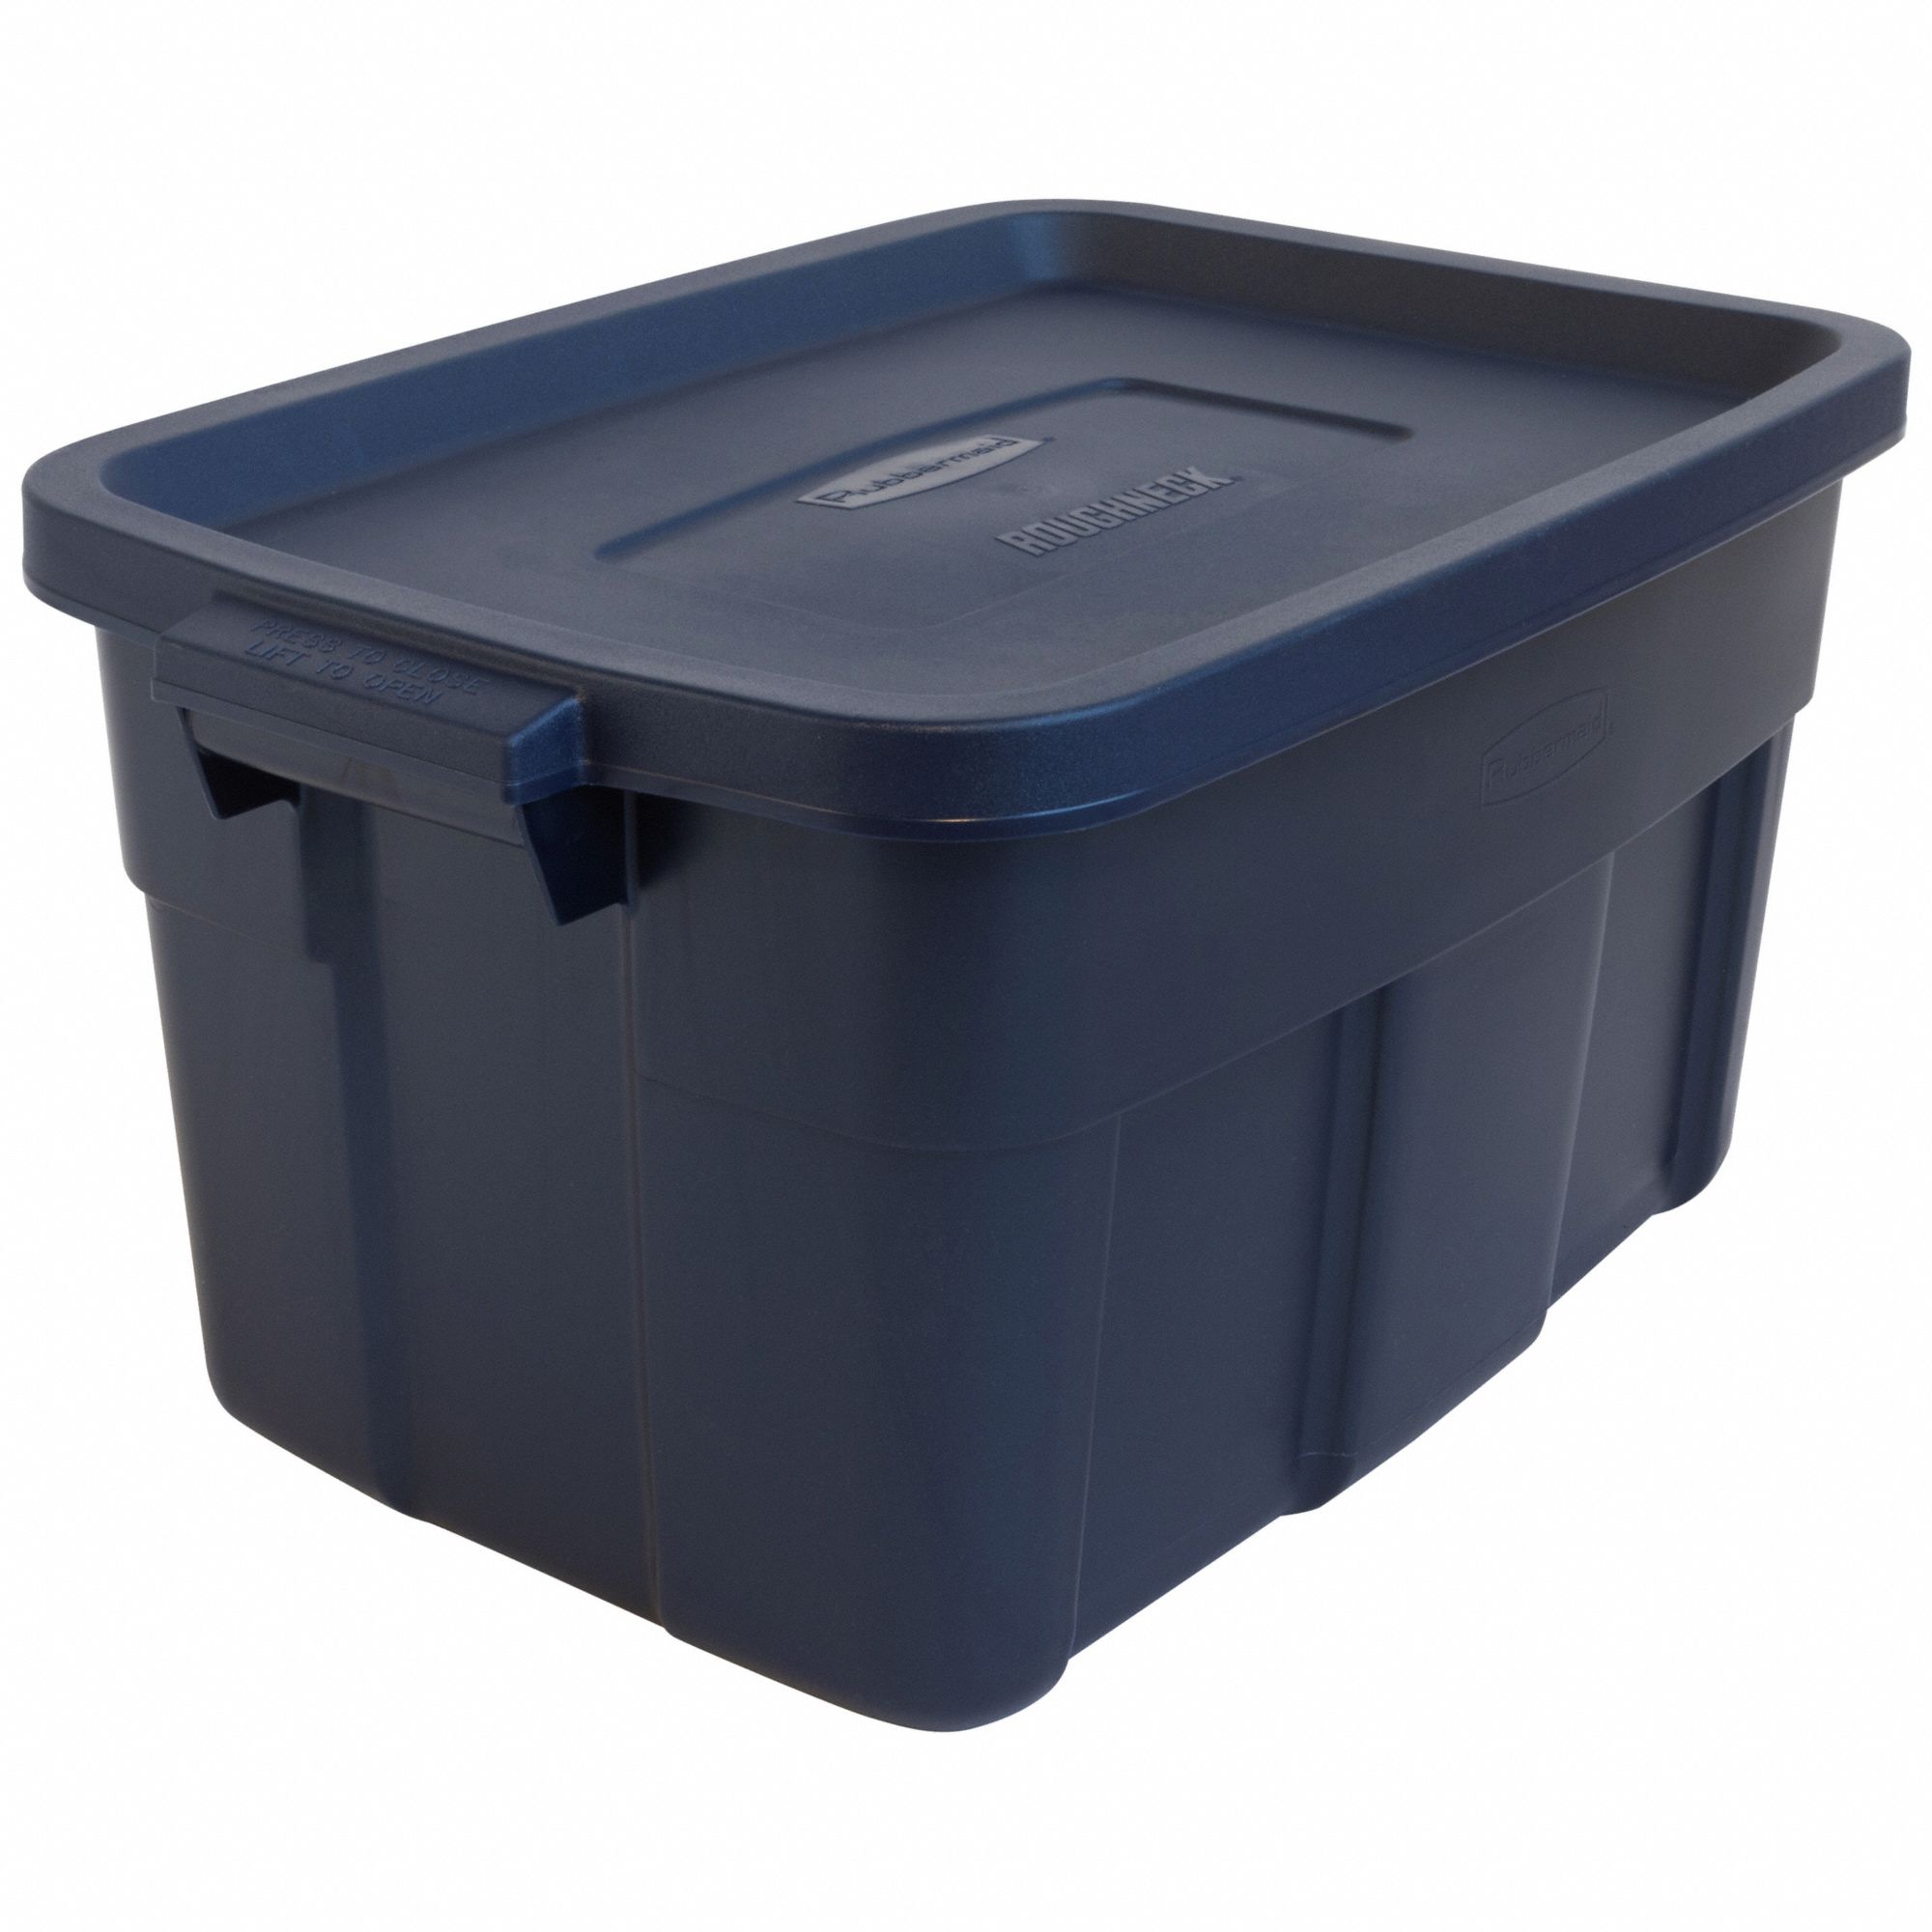 Storage Tote: 14 gal, 23 7/8 in x 15 7/8 in x 12 1/4 in, Dark Blue/Metallic Body, Blue